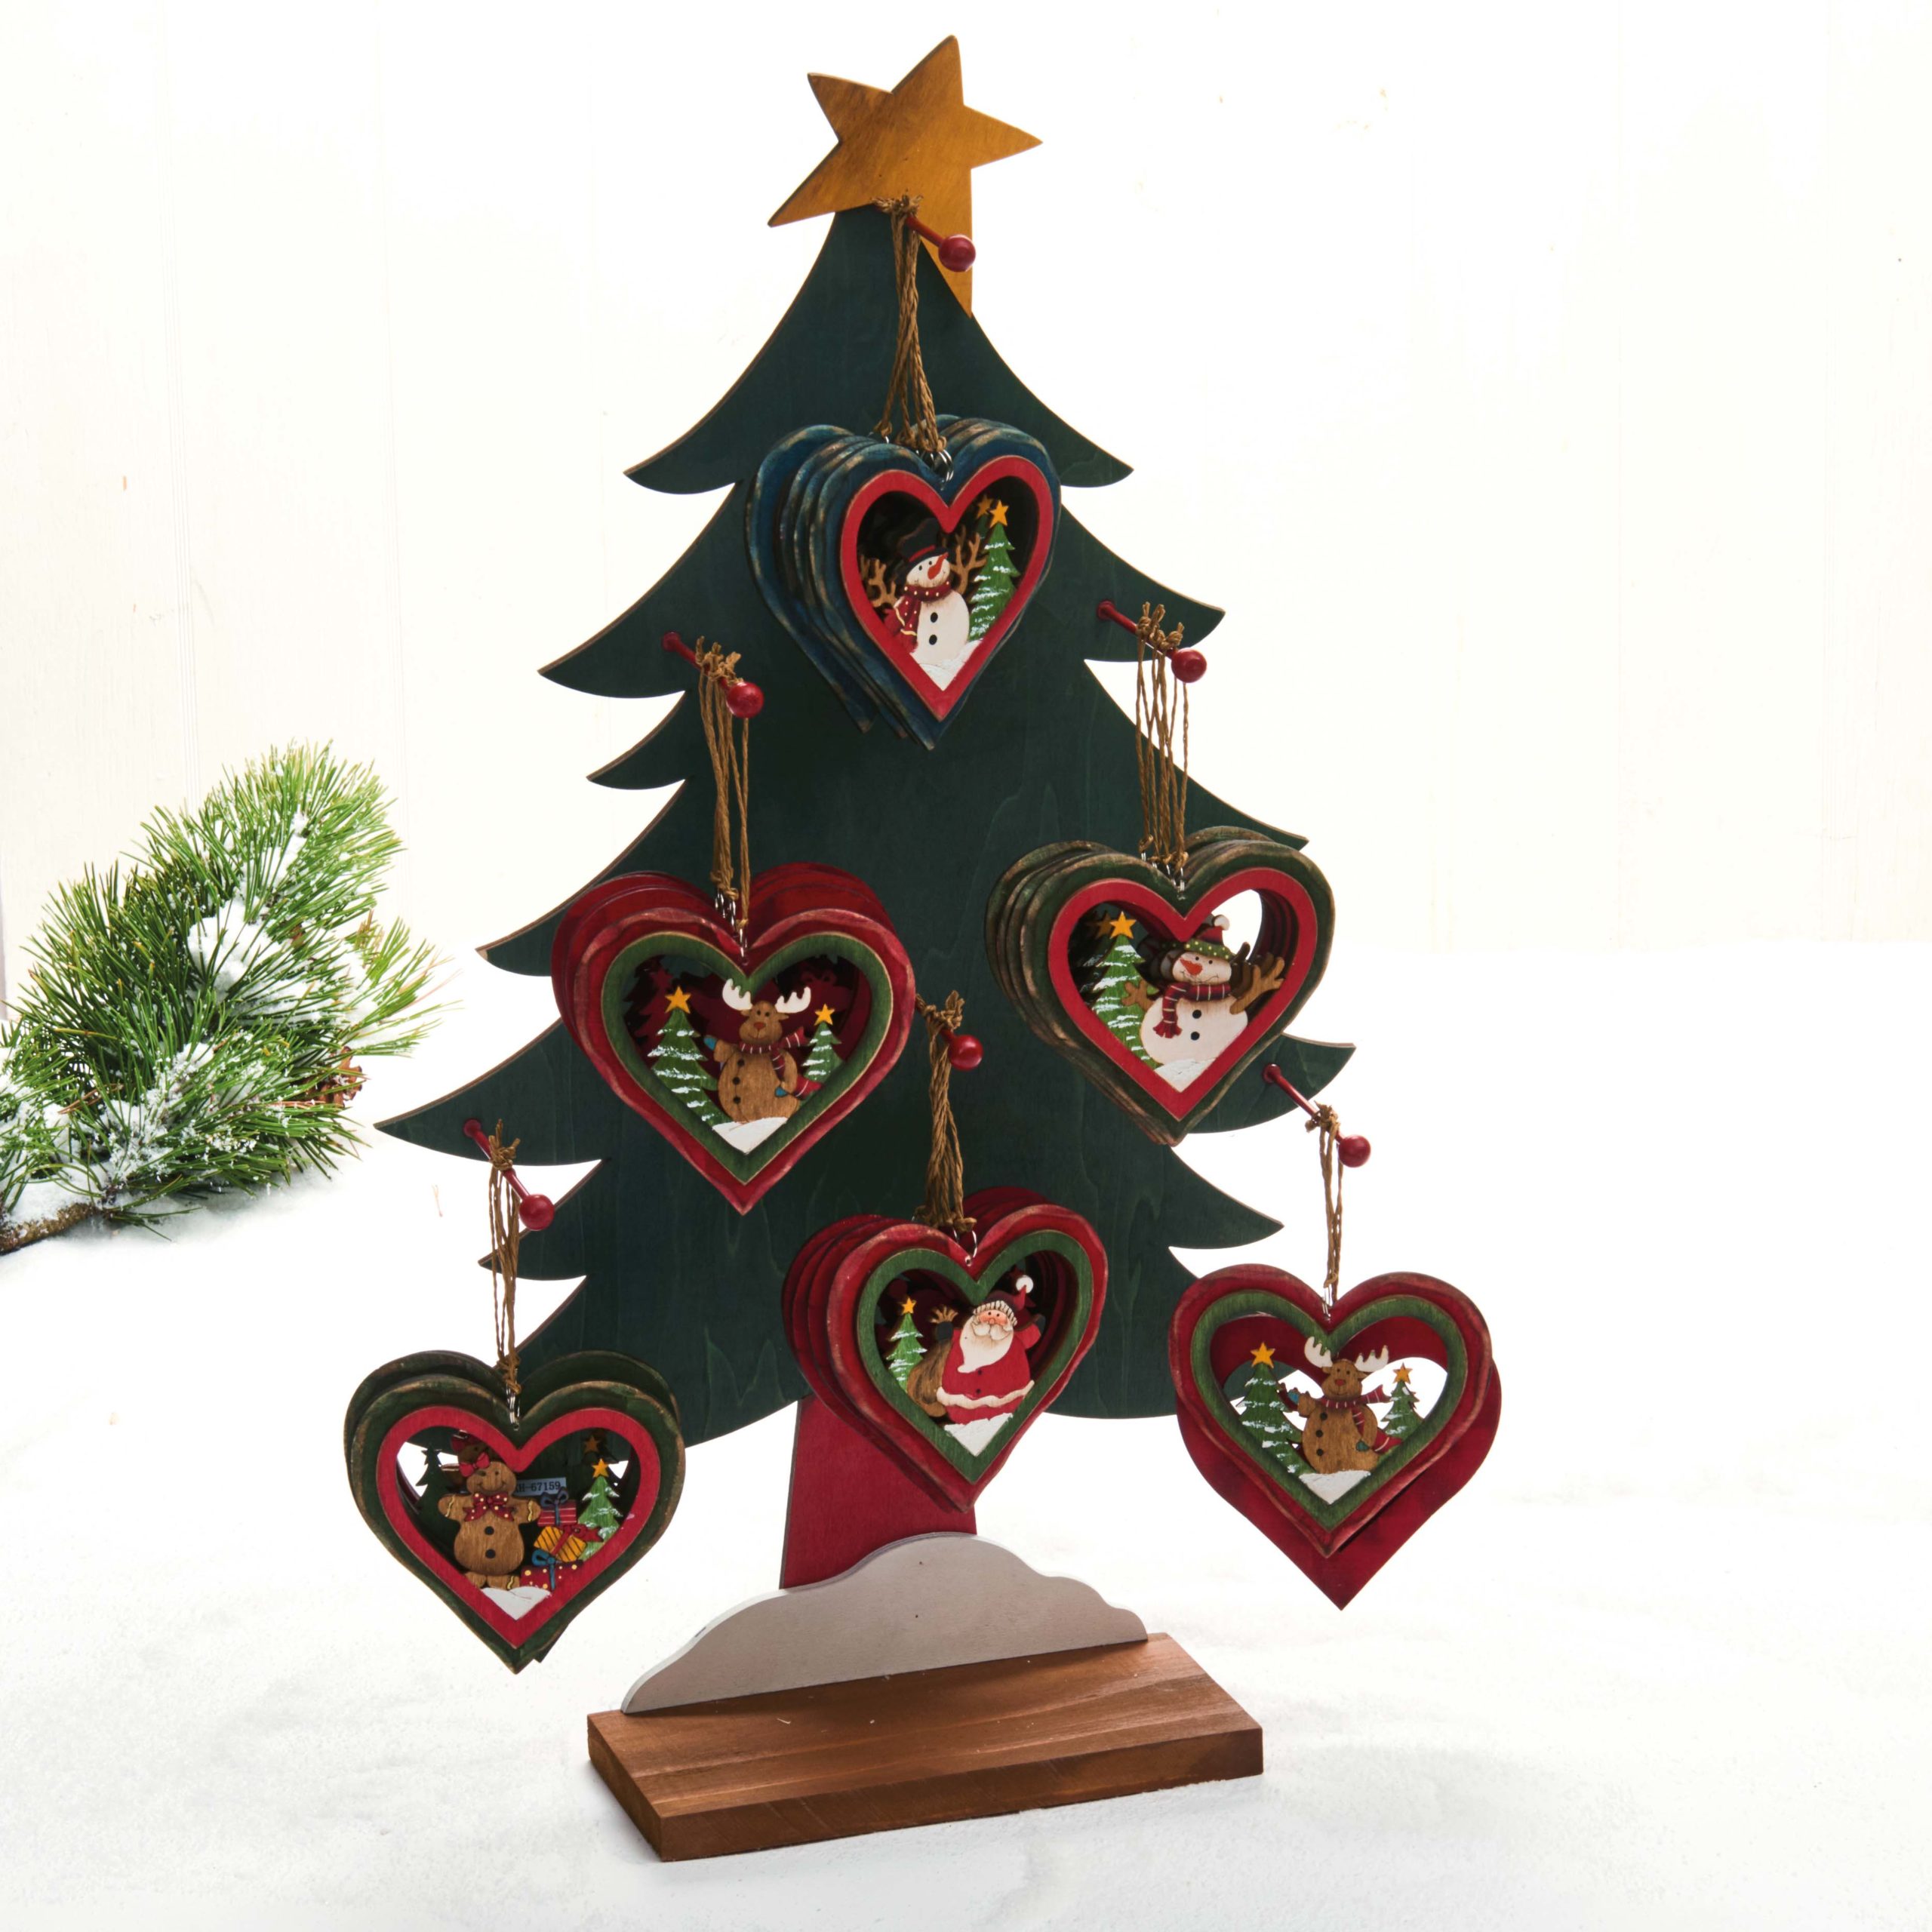 Hjertetræfigur til juletræet – Rensdyr med meget sne